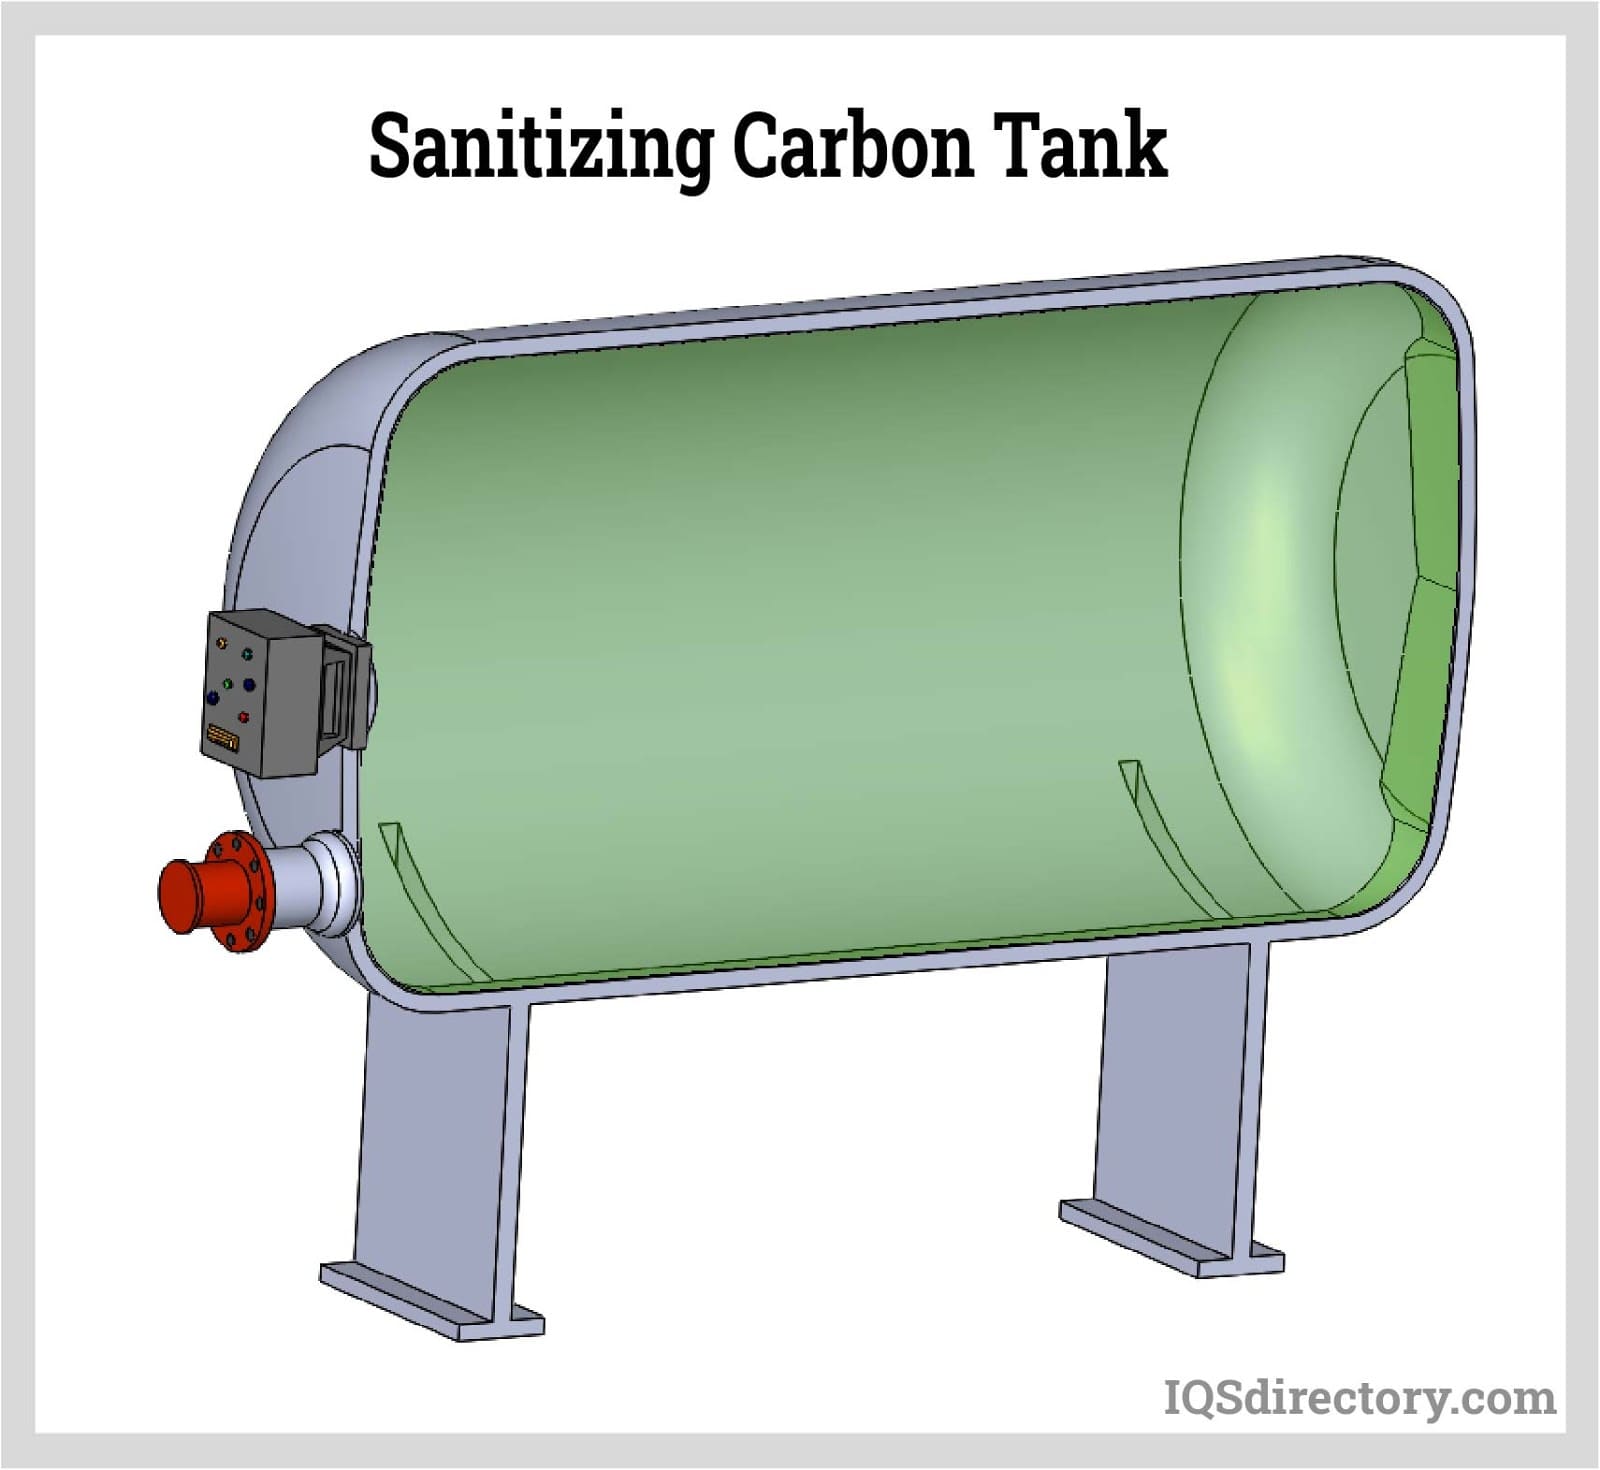 Sanitizing Carbon Tank